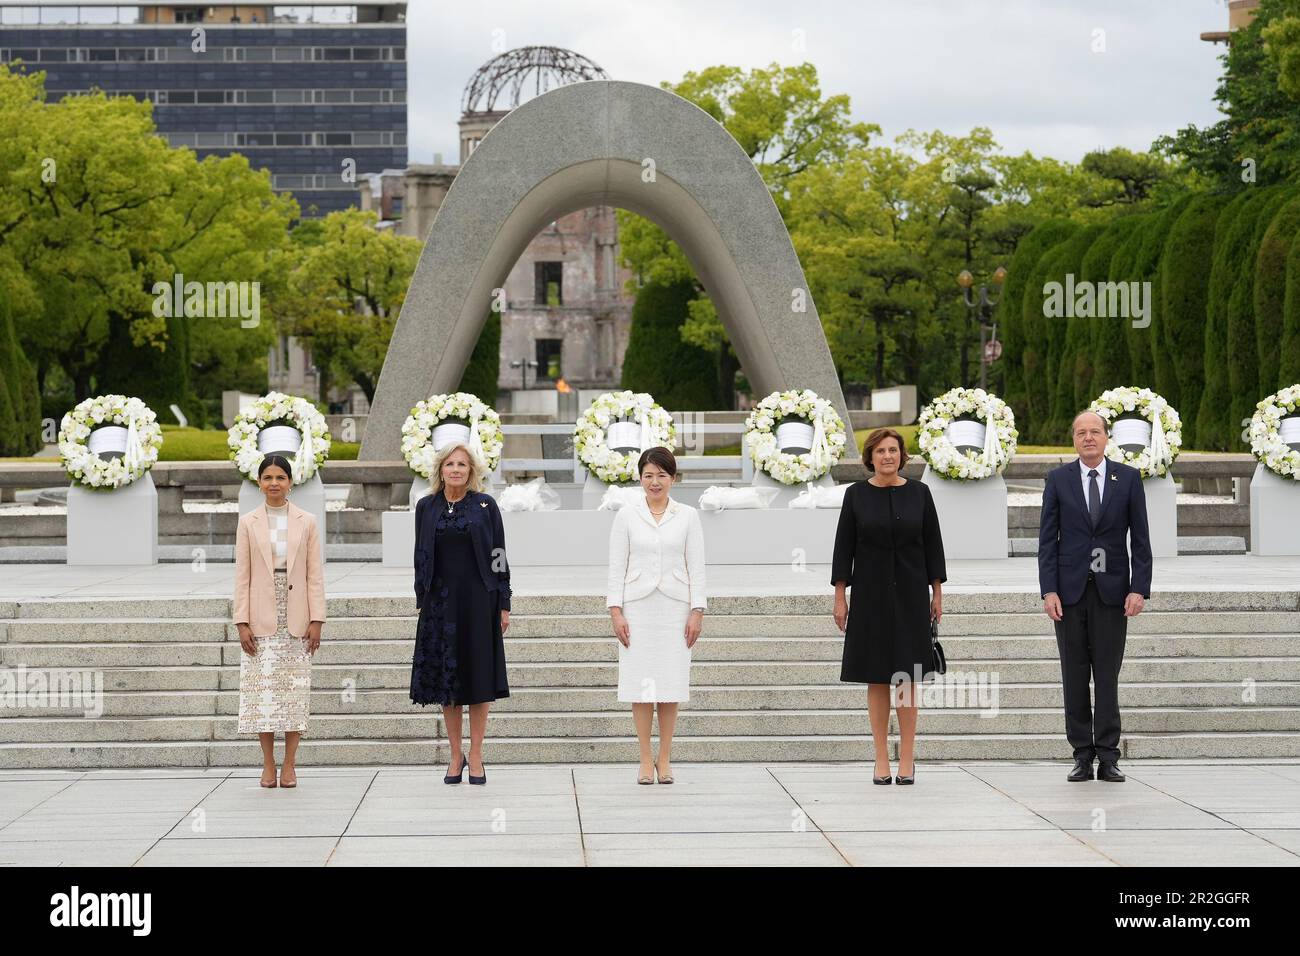 Hiroshima, Japon. 19th mai 2023. Le Groupe des sept conjoints se posent ensemble après une cérémonie de la couronne au Cénotaphe commémoratif du Parc commémoratif de la paix d'Hiroshima, le premier jour du Sommet de G7, à 19 mai 2023, à Hiroshima, au Japon. Debout de gauche à droite : Akshata Narayan Murty, du Royaume-Uni, la première dame des États-Unis, Jill Biden, Yuko Kishida, du Japon, Britta Ernst, d'Allemagne, et Heiko von der Leyen, épouse du président de l'Union européenne. Crédit: Photo de piscine/G7 Hiroshima/Alamy Live News Banque D'Images